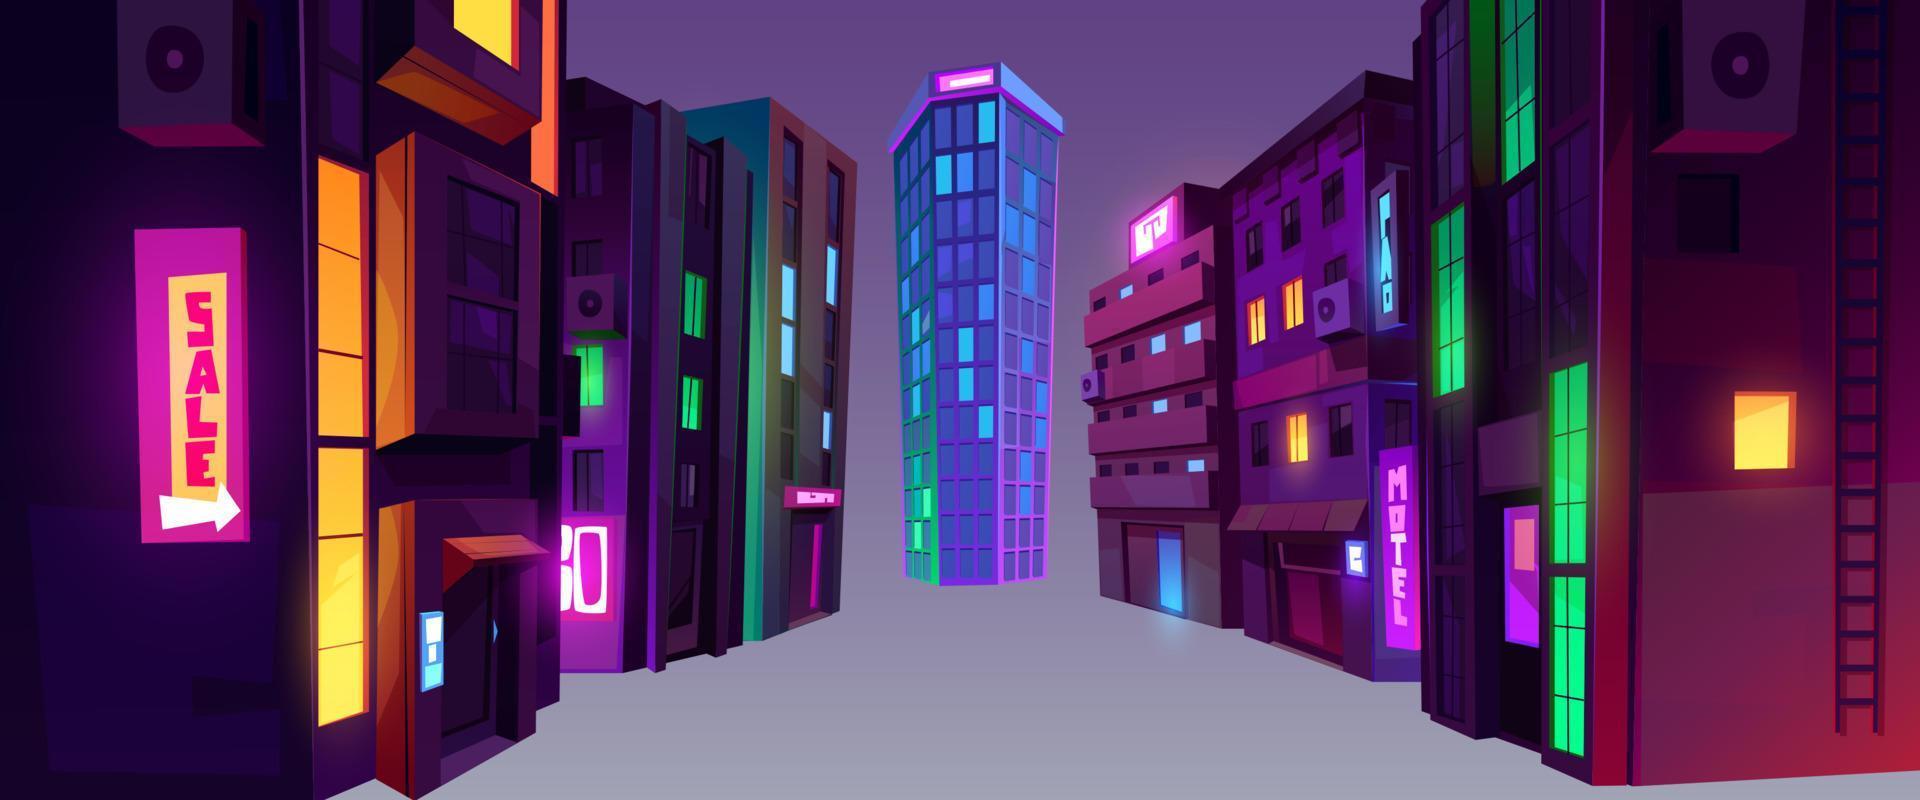 stad byggnader på natt i perspektiv se vektor